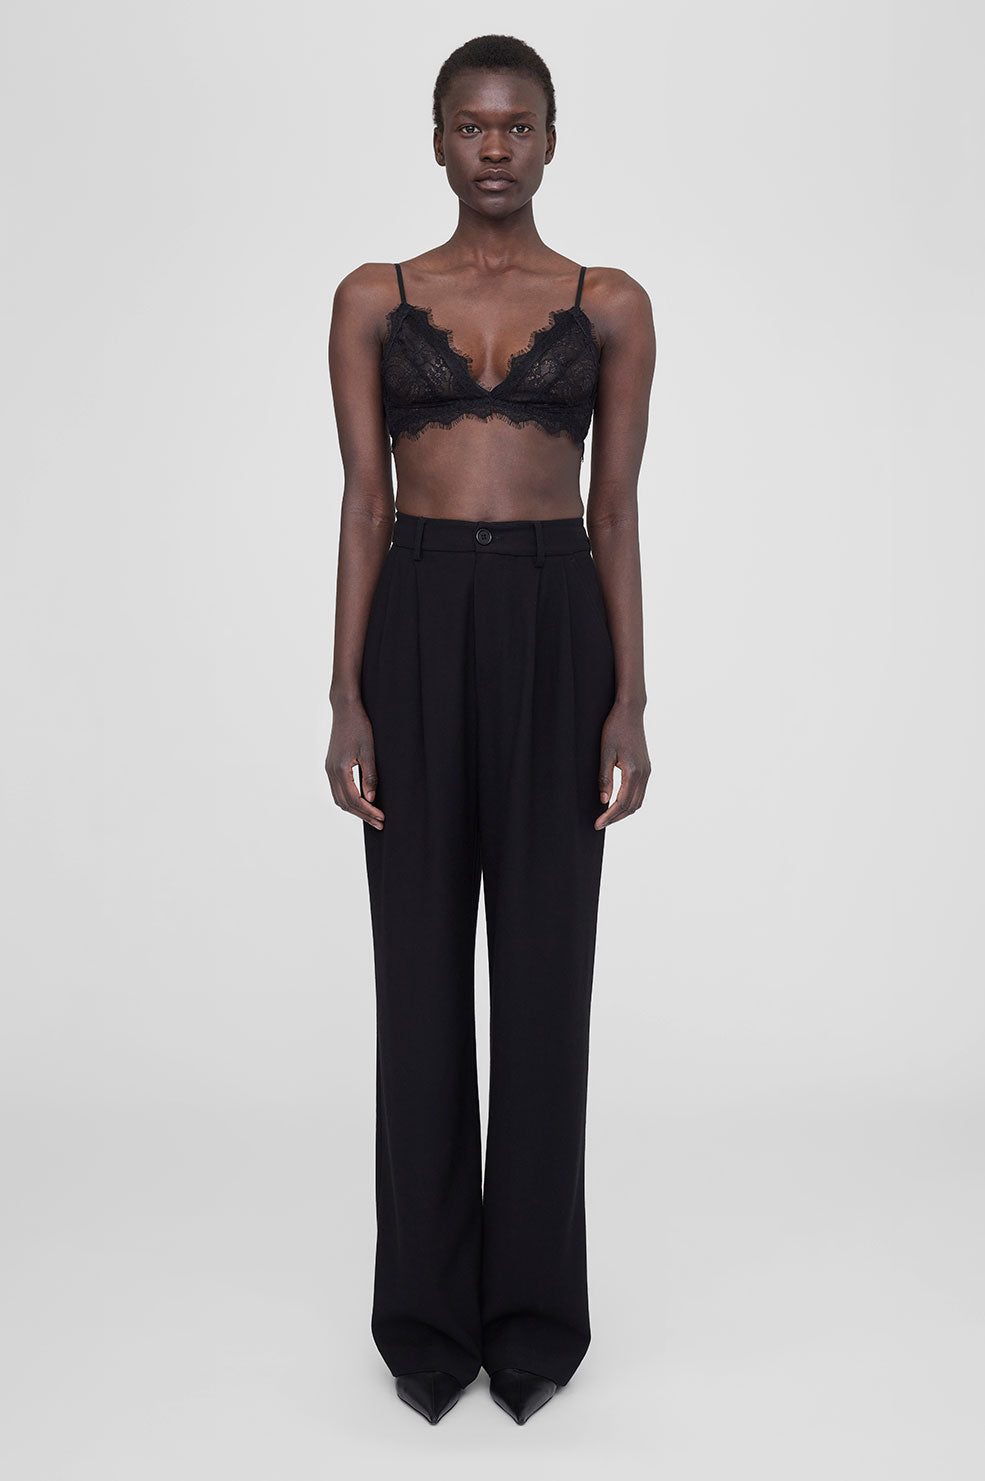 Black Lace Bralette, bralette crop top, Women's Clothing, Lingerie, Size  S/M/L